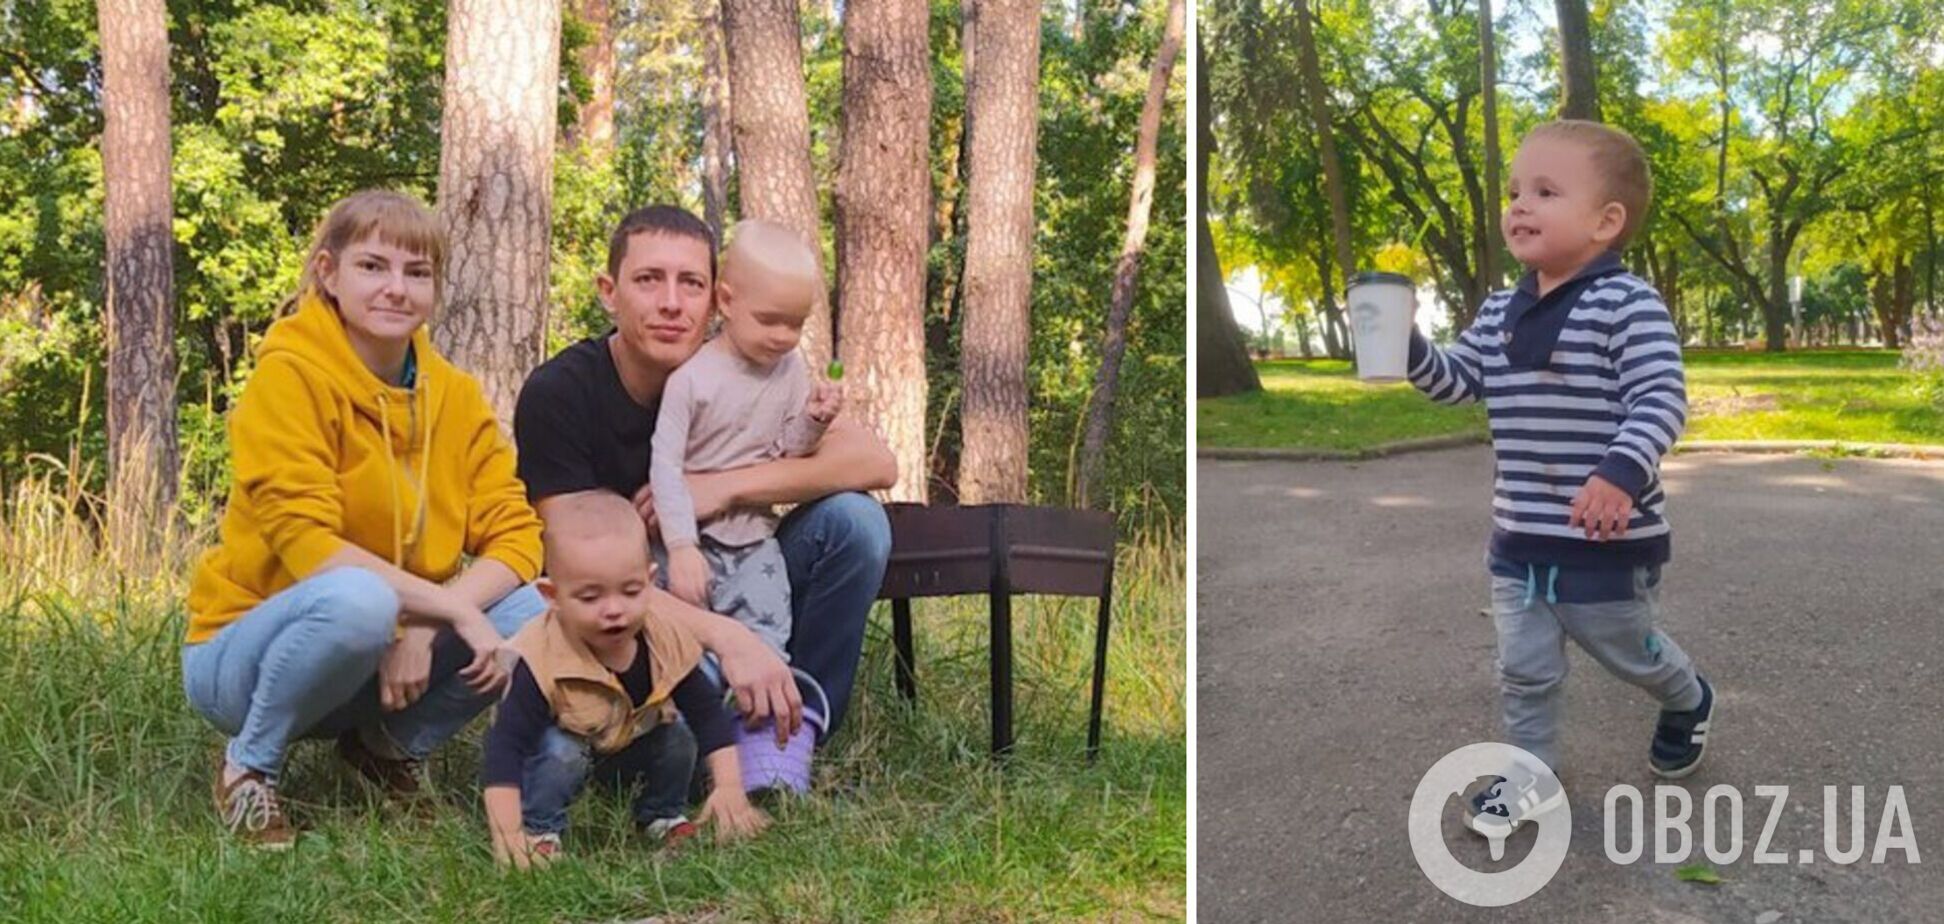 'В тот день не было никаких предчувствий': мама 2-летнего Романа, травмированного в Чернигове, рассказала о трагедии. Фото